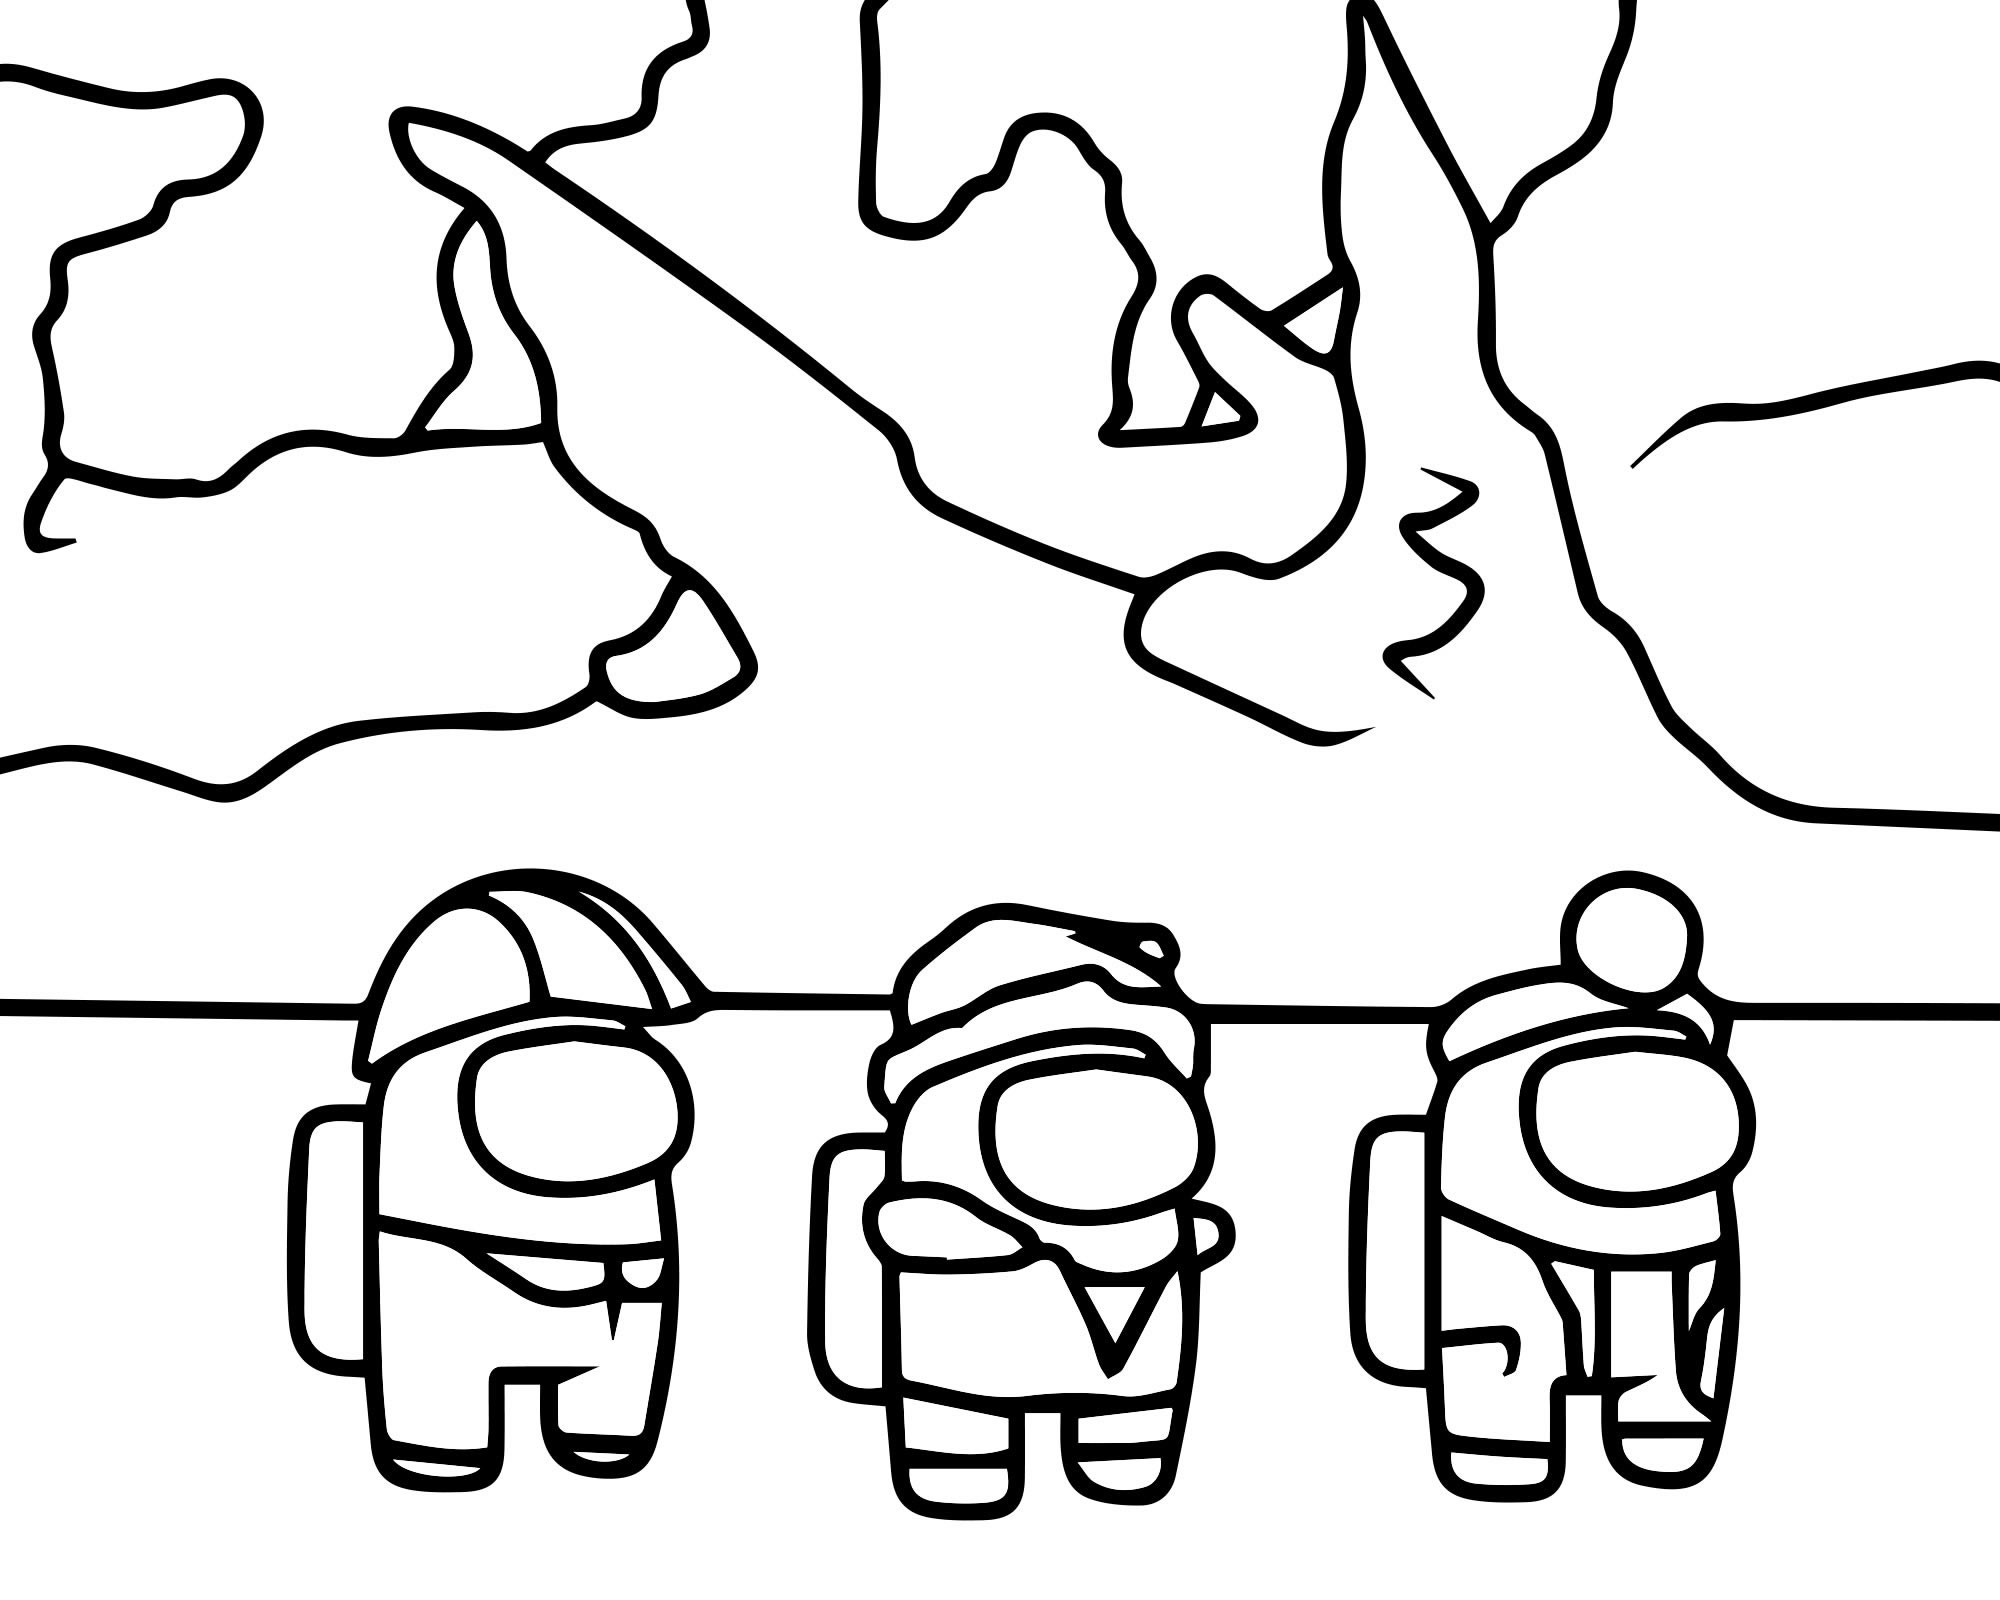 Персонажи игры Амонг раскраска для детей